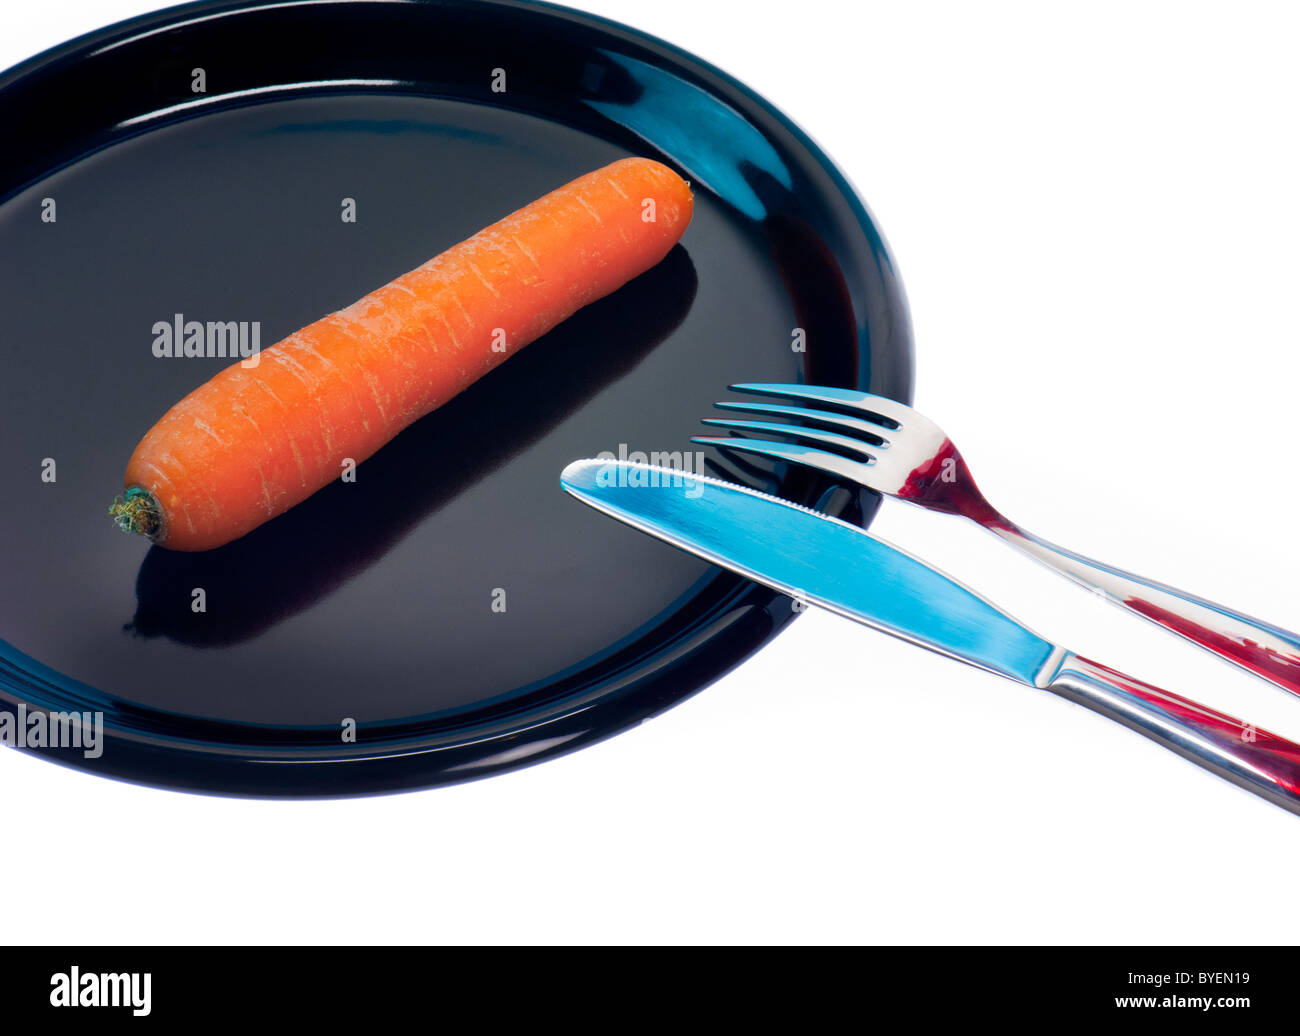 Simbolo mangiare meno carota dieta a basso contenuto di grassi senza obesità slim piastra nera veggi verdure coltello forcella tablett decrescente simbolico Foto Stock